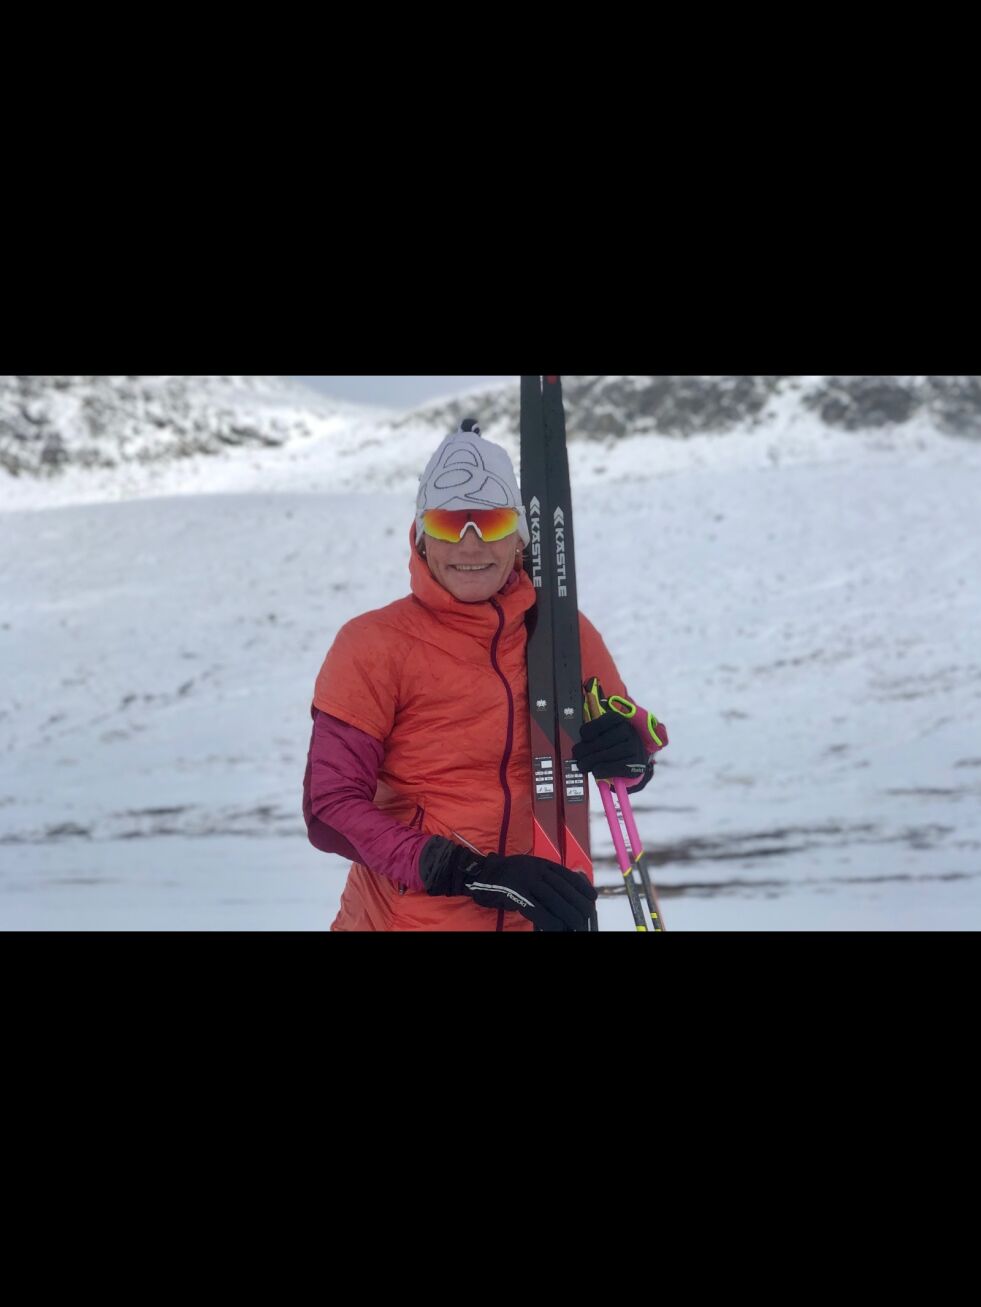 Anette Bøe skal både holde foredrag og skikurs på Jakobsbakken kommende vinter. - Nå er påmeldingen åpnet og det er få plasser, sier Erik Jensen Liland i Jakobsbakken Mountain Resort.